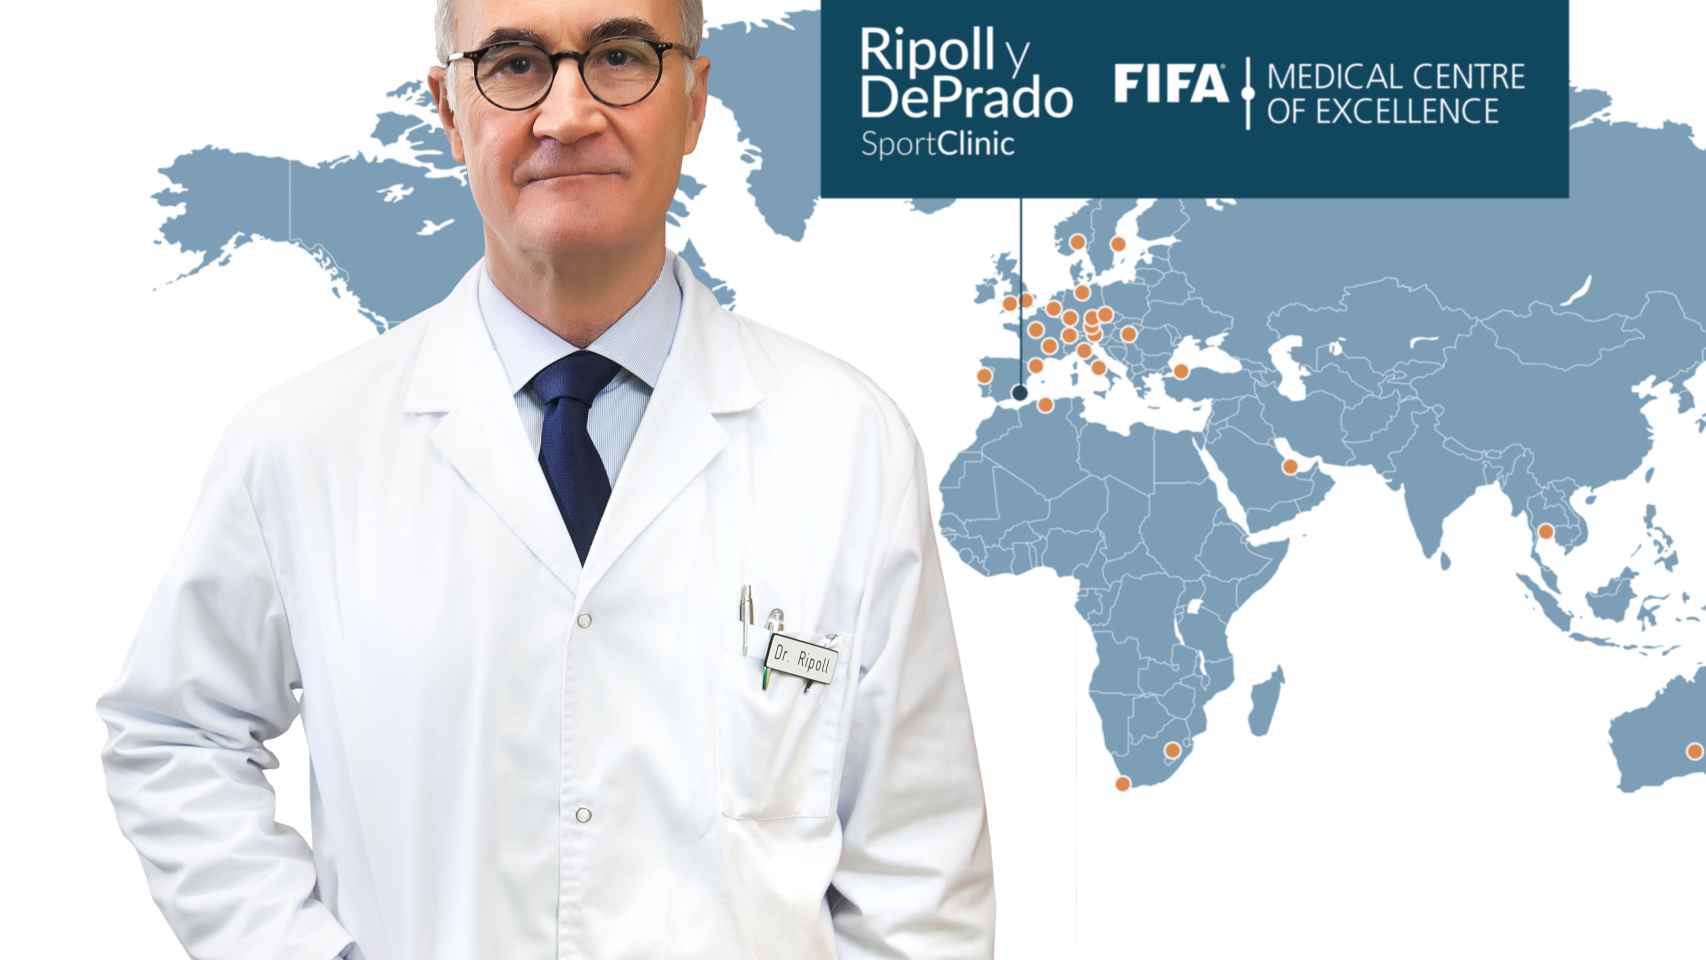 El doctor Ripoll es una eminencia mundial en la medicina deportiva y su consulta atiende a megaestrellas como el ala-pívot de la NBA Pau Gasol.